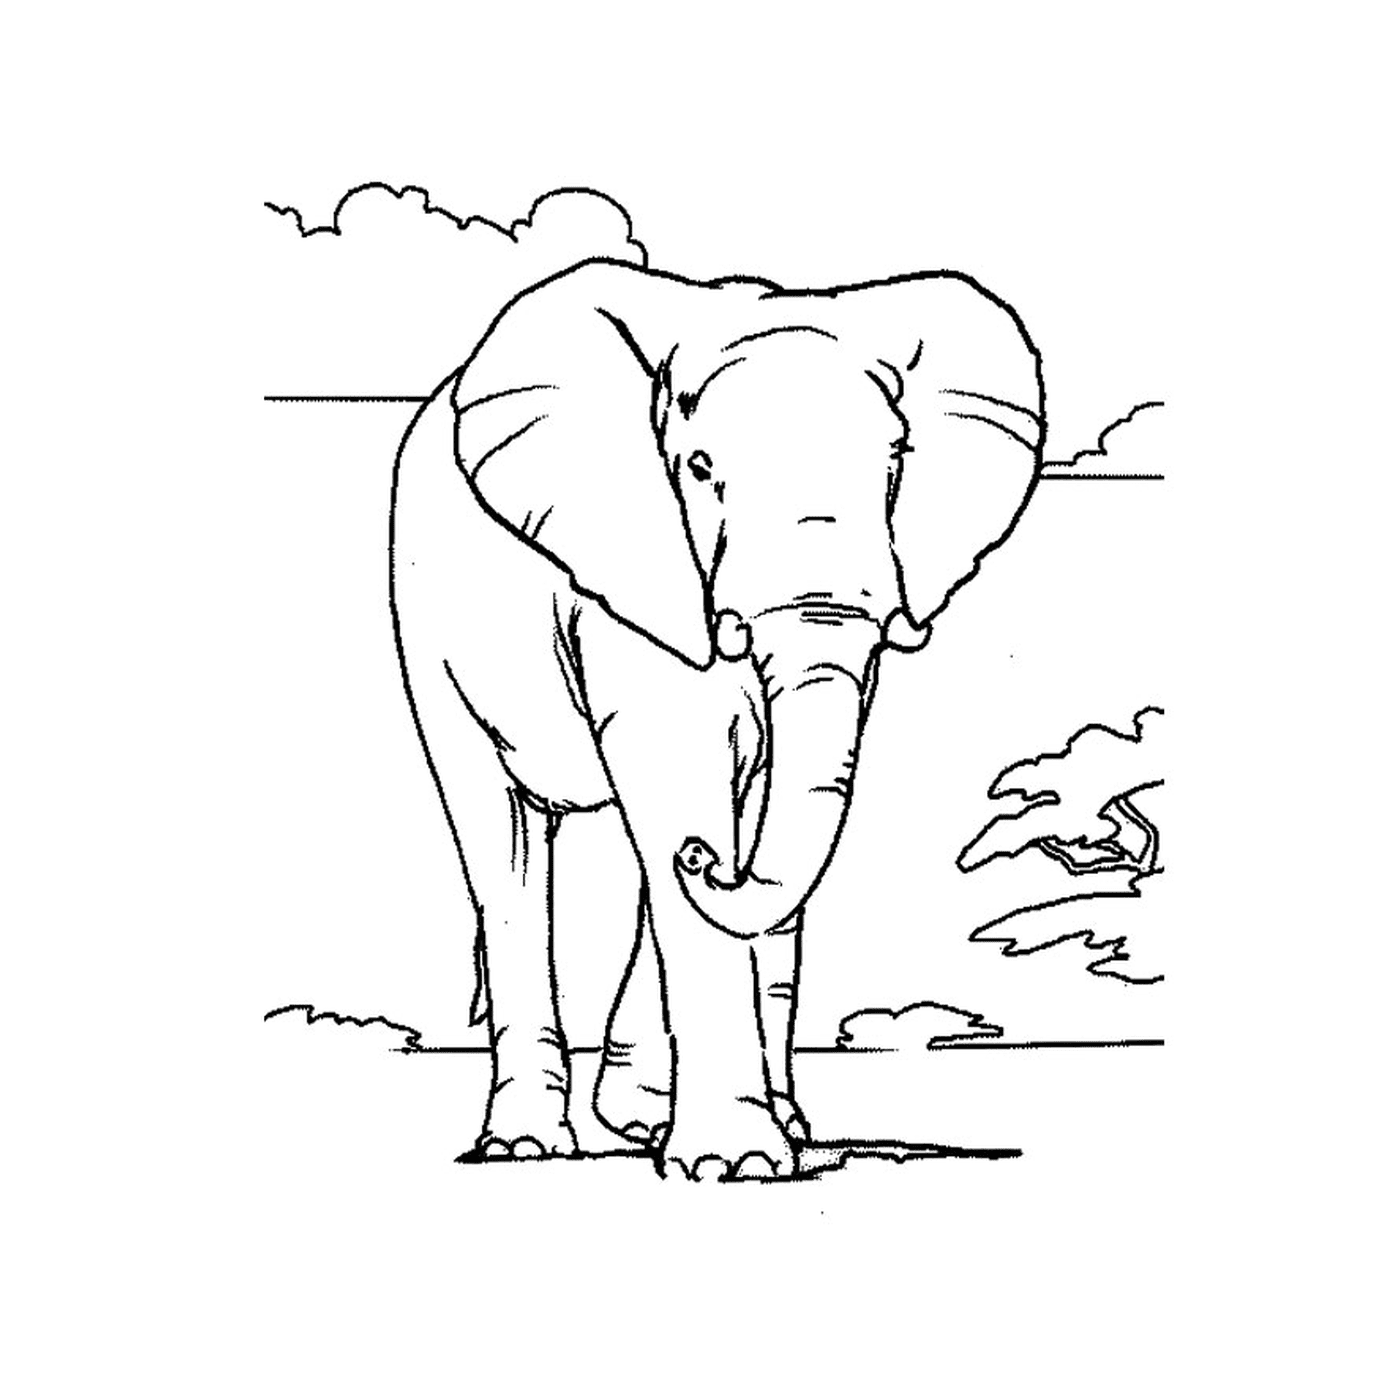  एक हाथी बादल से भरा आकाश के सामने खड़ा है 